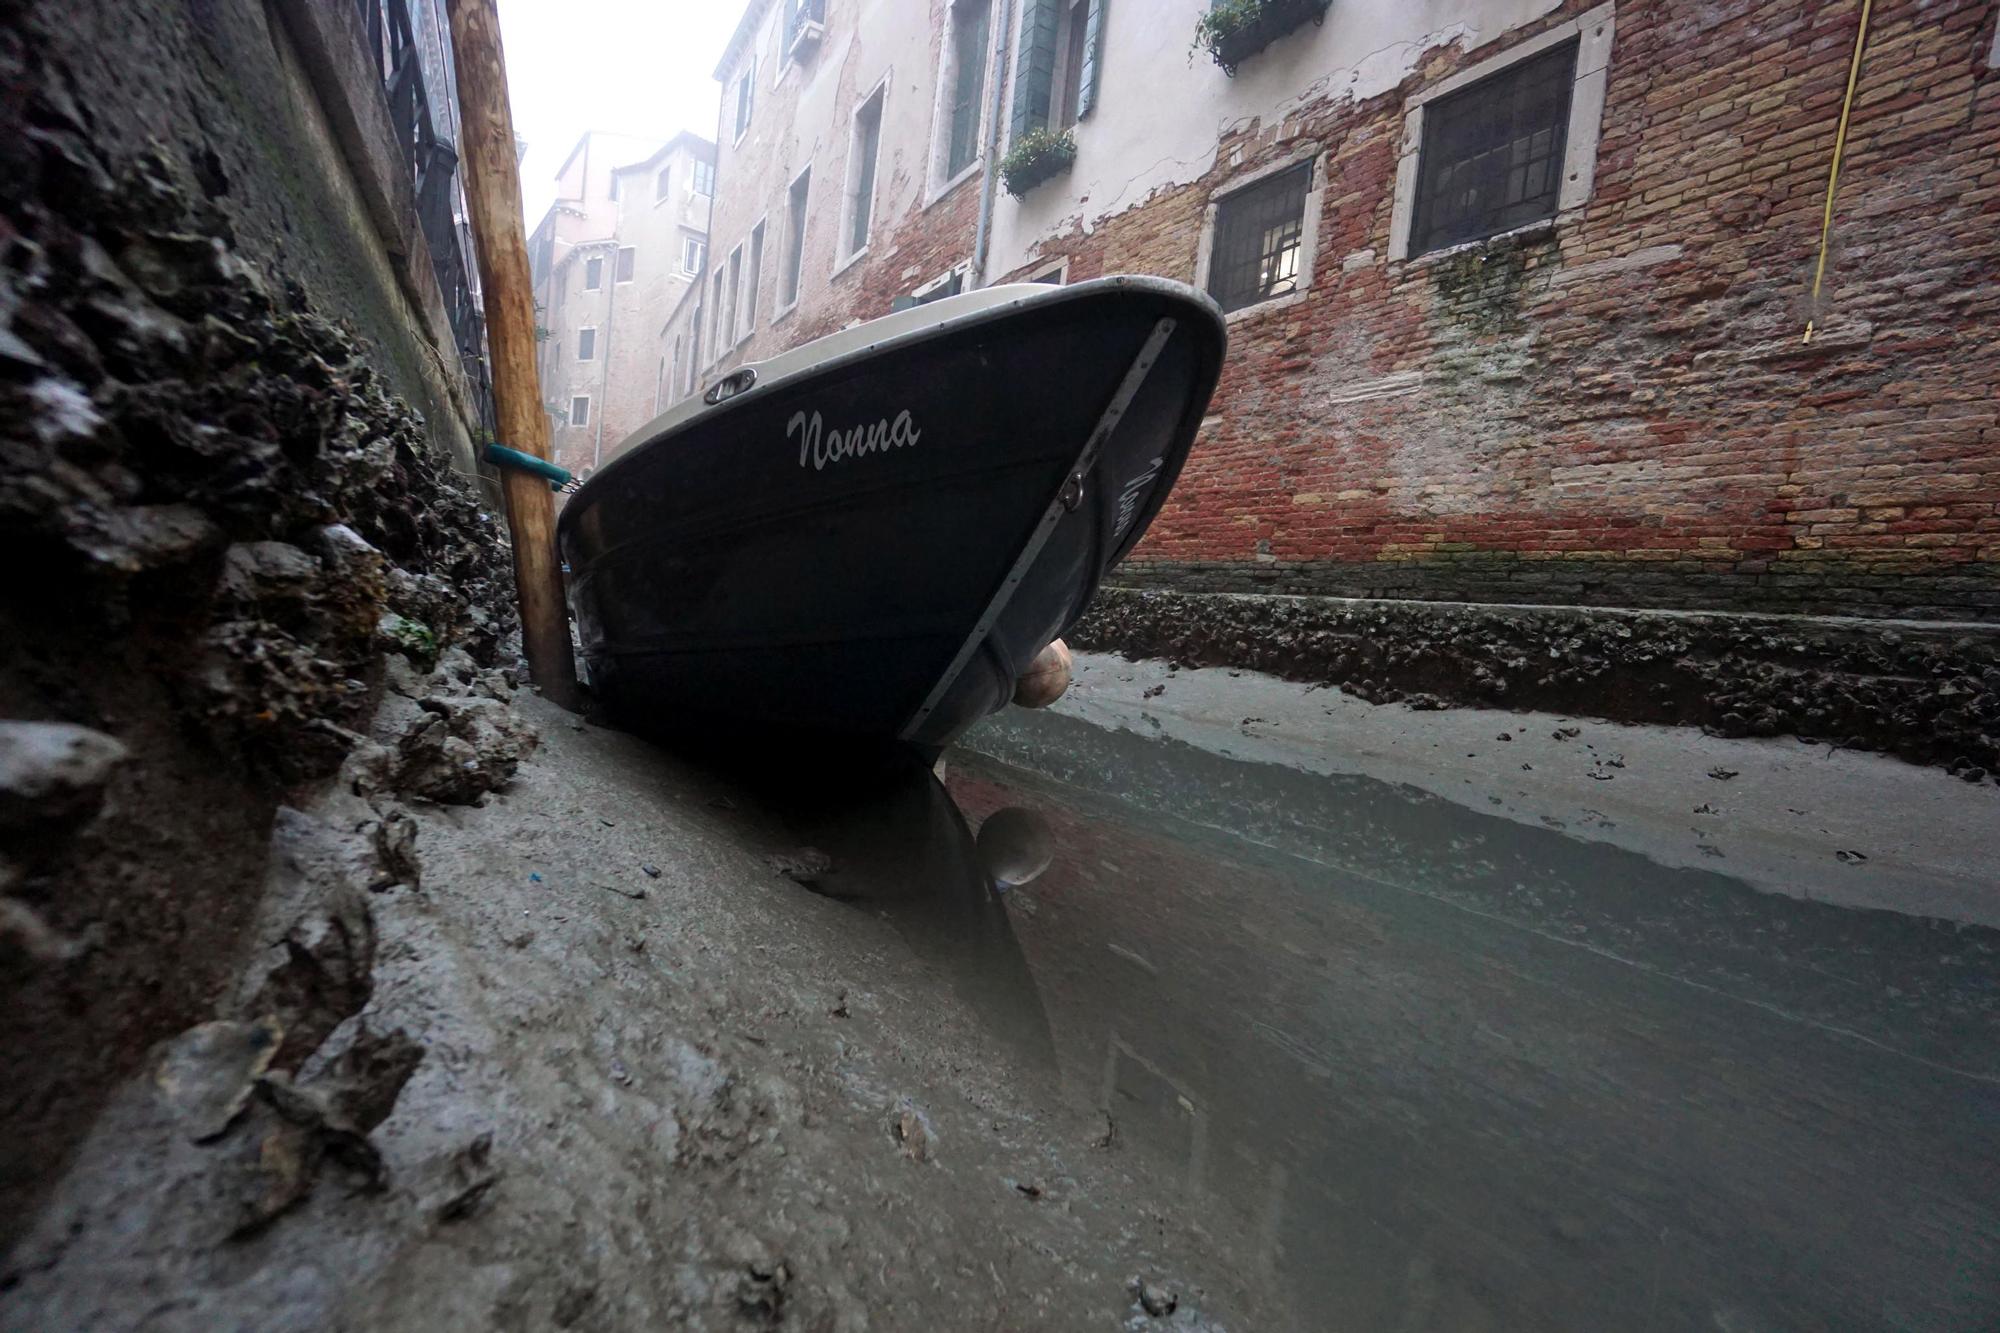 Low tide in Venice